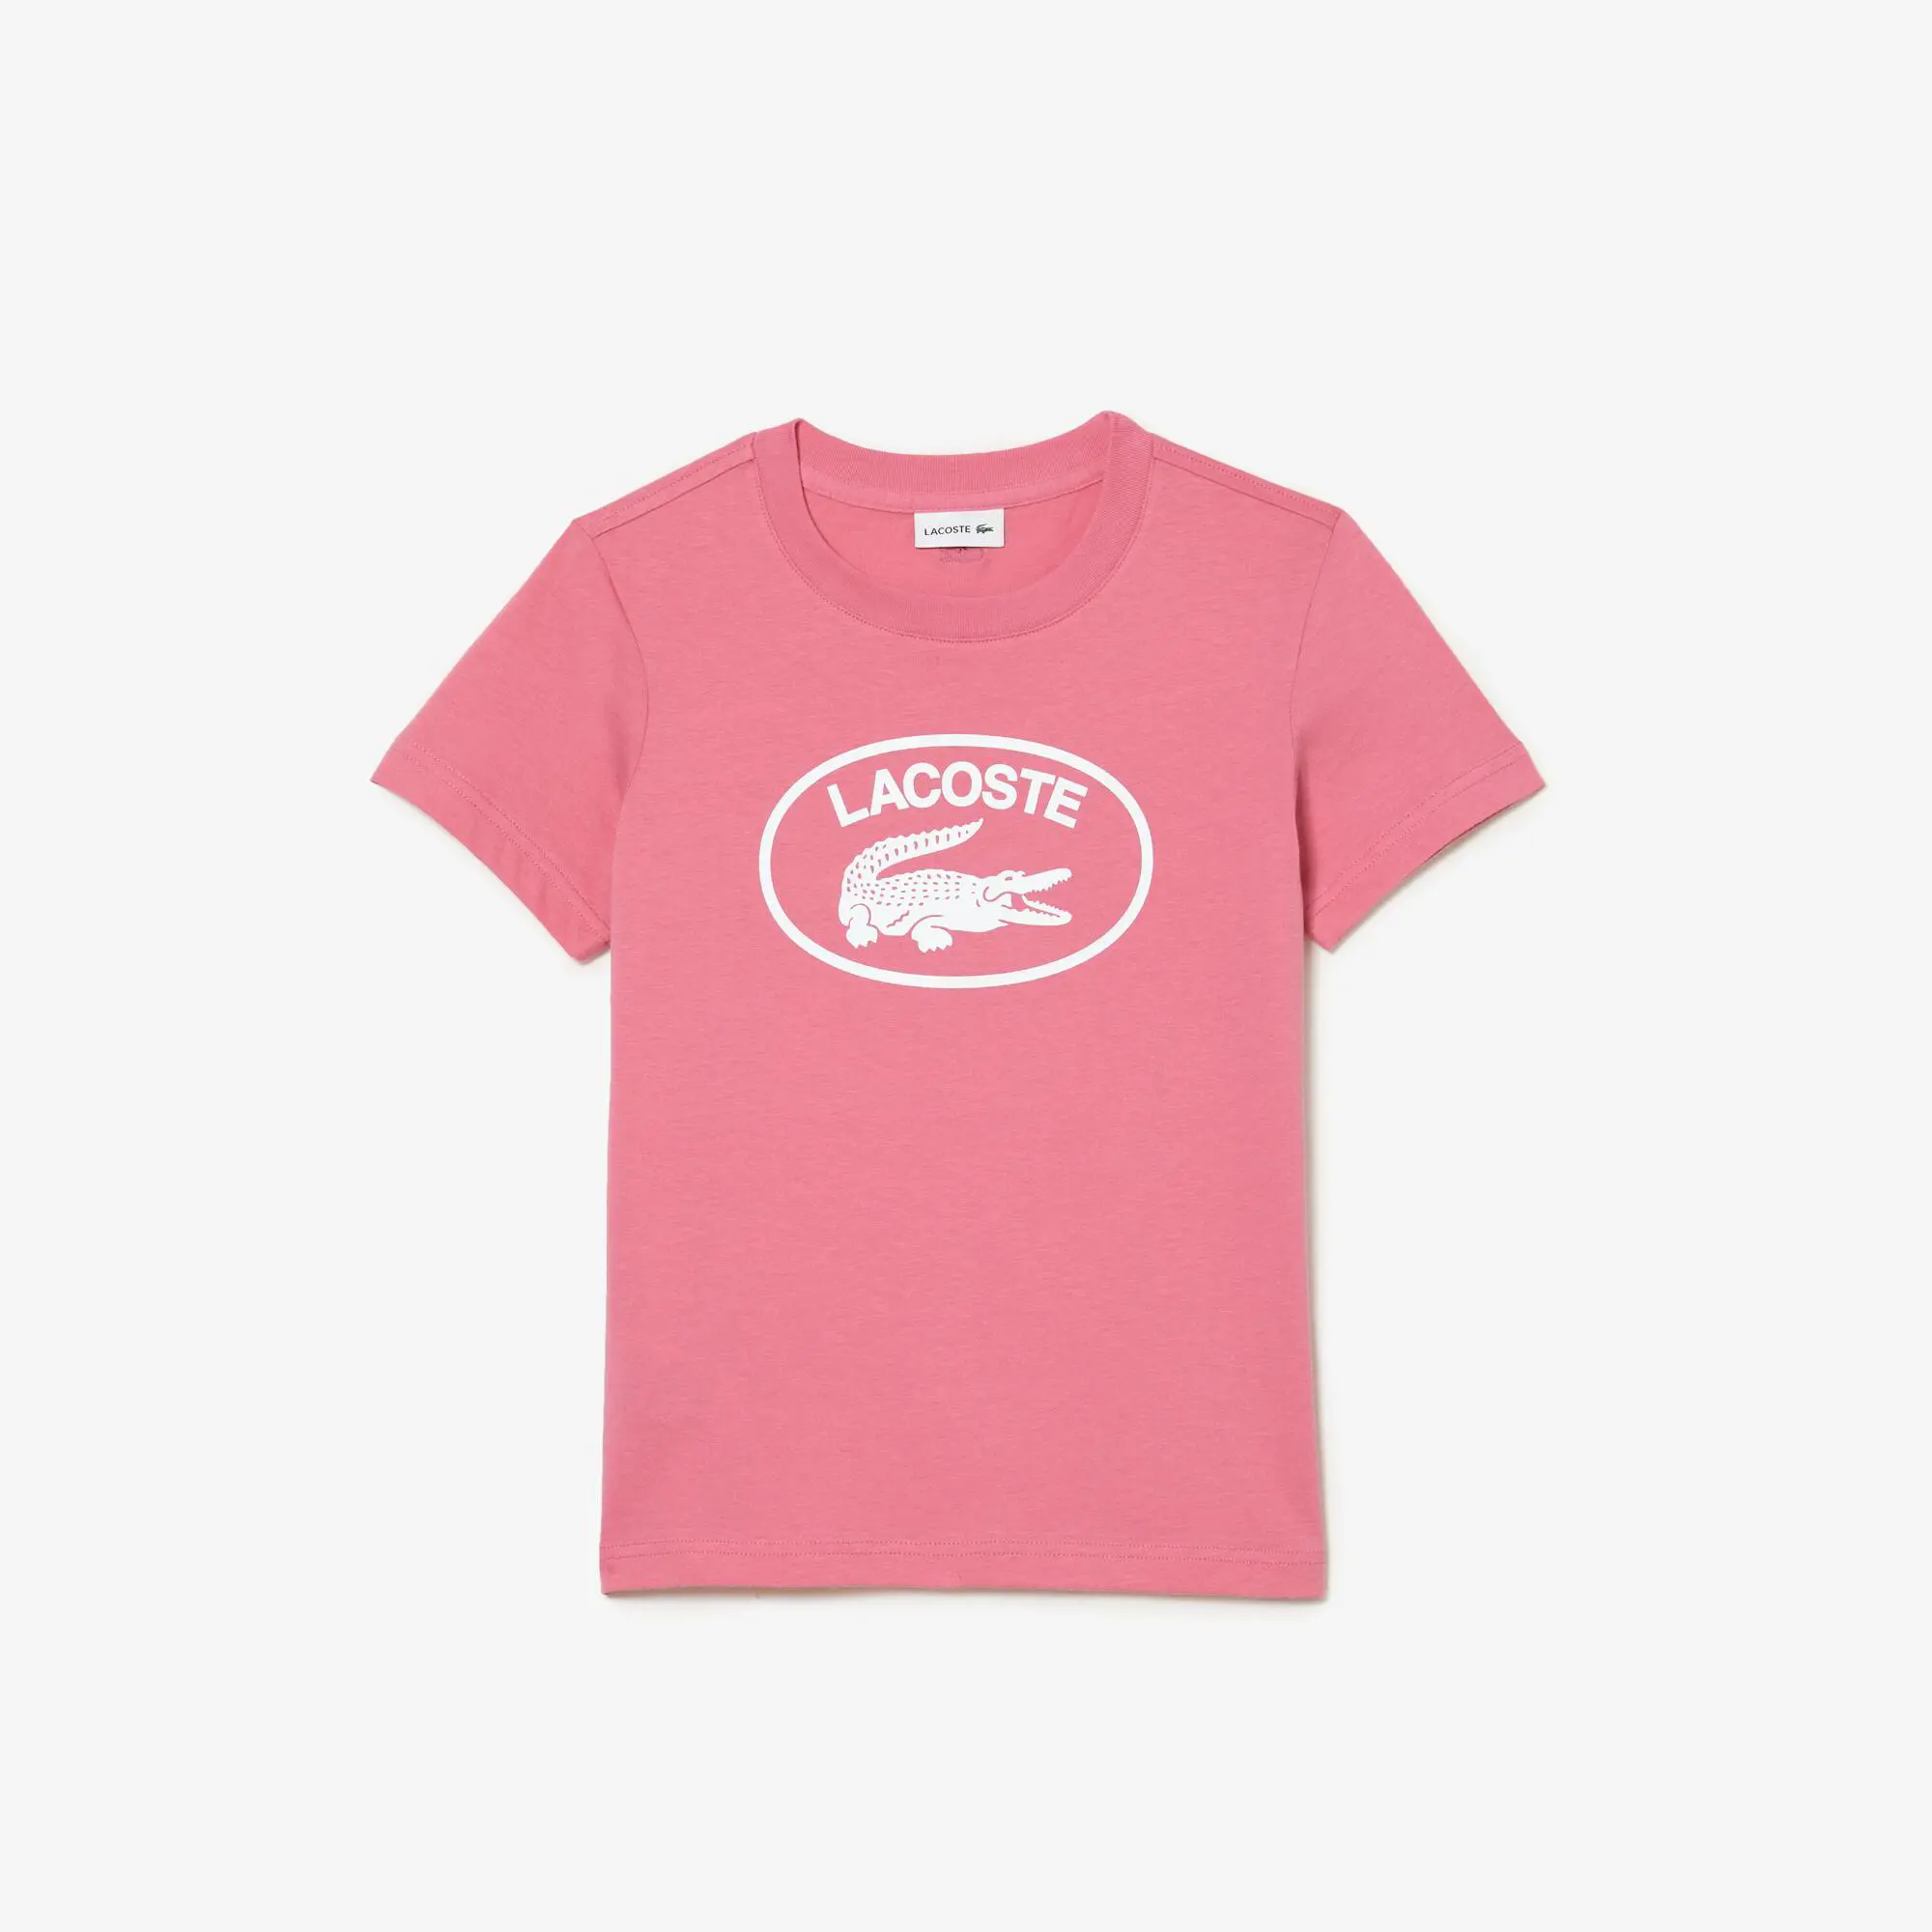 Lacoste Camiseta de niño Lacoste en tejido de punto de algodón con detalles de la marca a contraste. 2